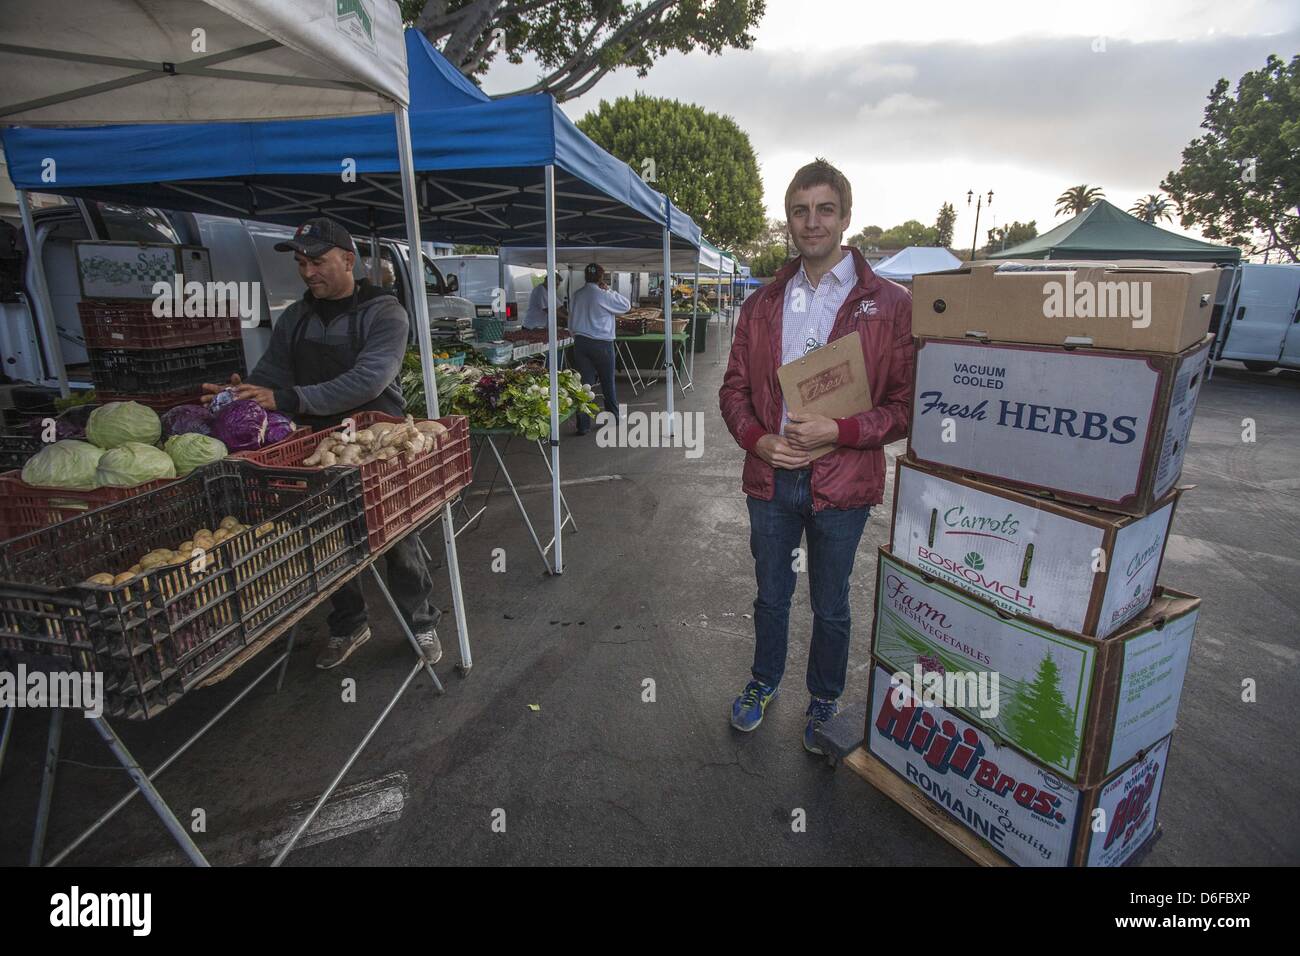 8 avril 2013 - Los Angeles, Californie, États-Unis - Dan Chak, fondateur et PDG de petite ferme, douce à un marché de l'ouest d'Hollywood. (Crédit Image : © Chiu/ZUMAPRESS.com) Ringo Banque D'Images